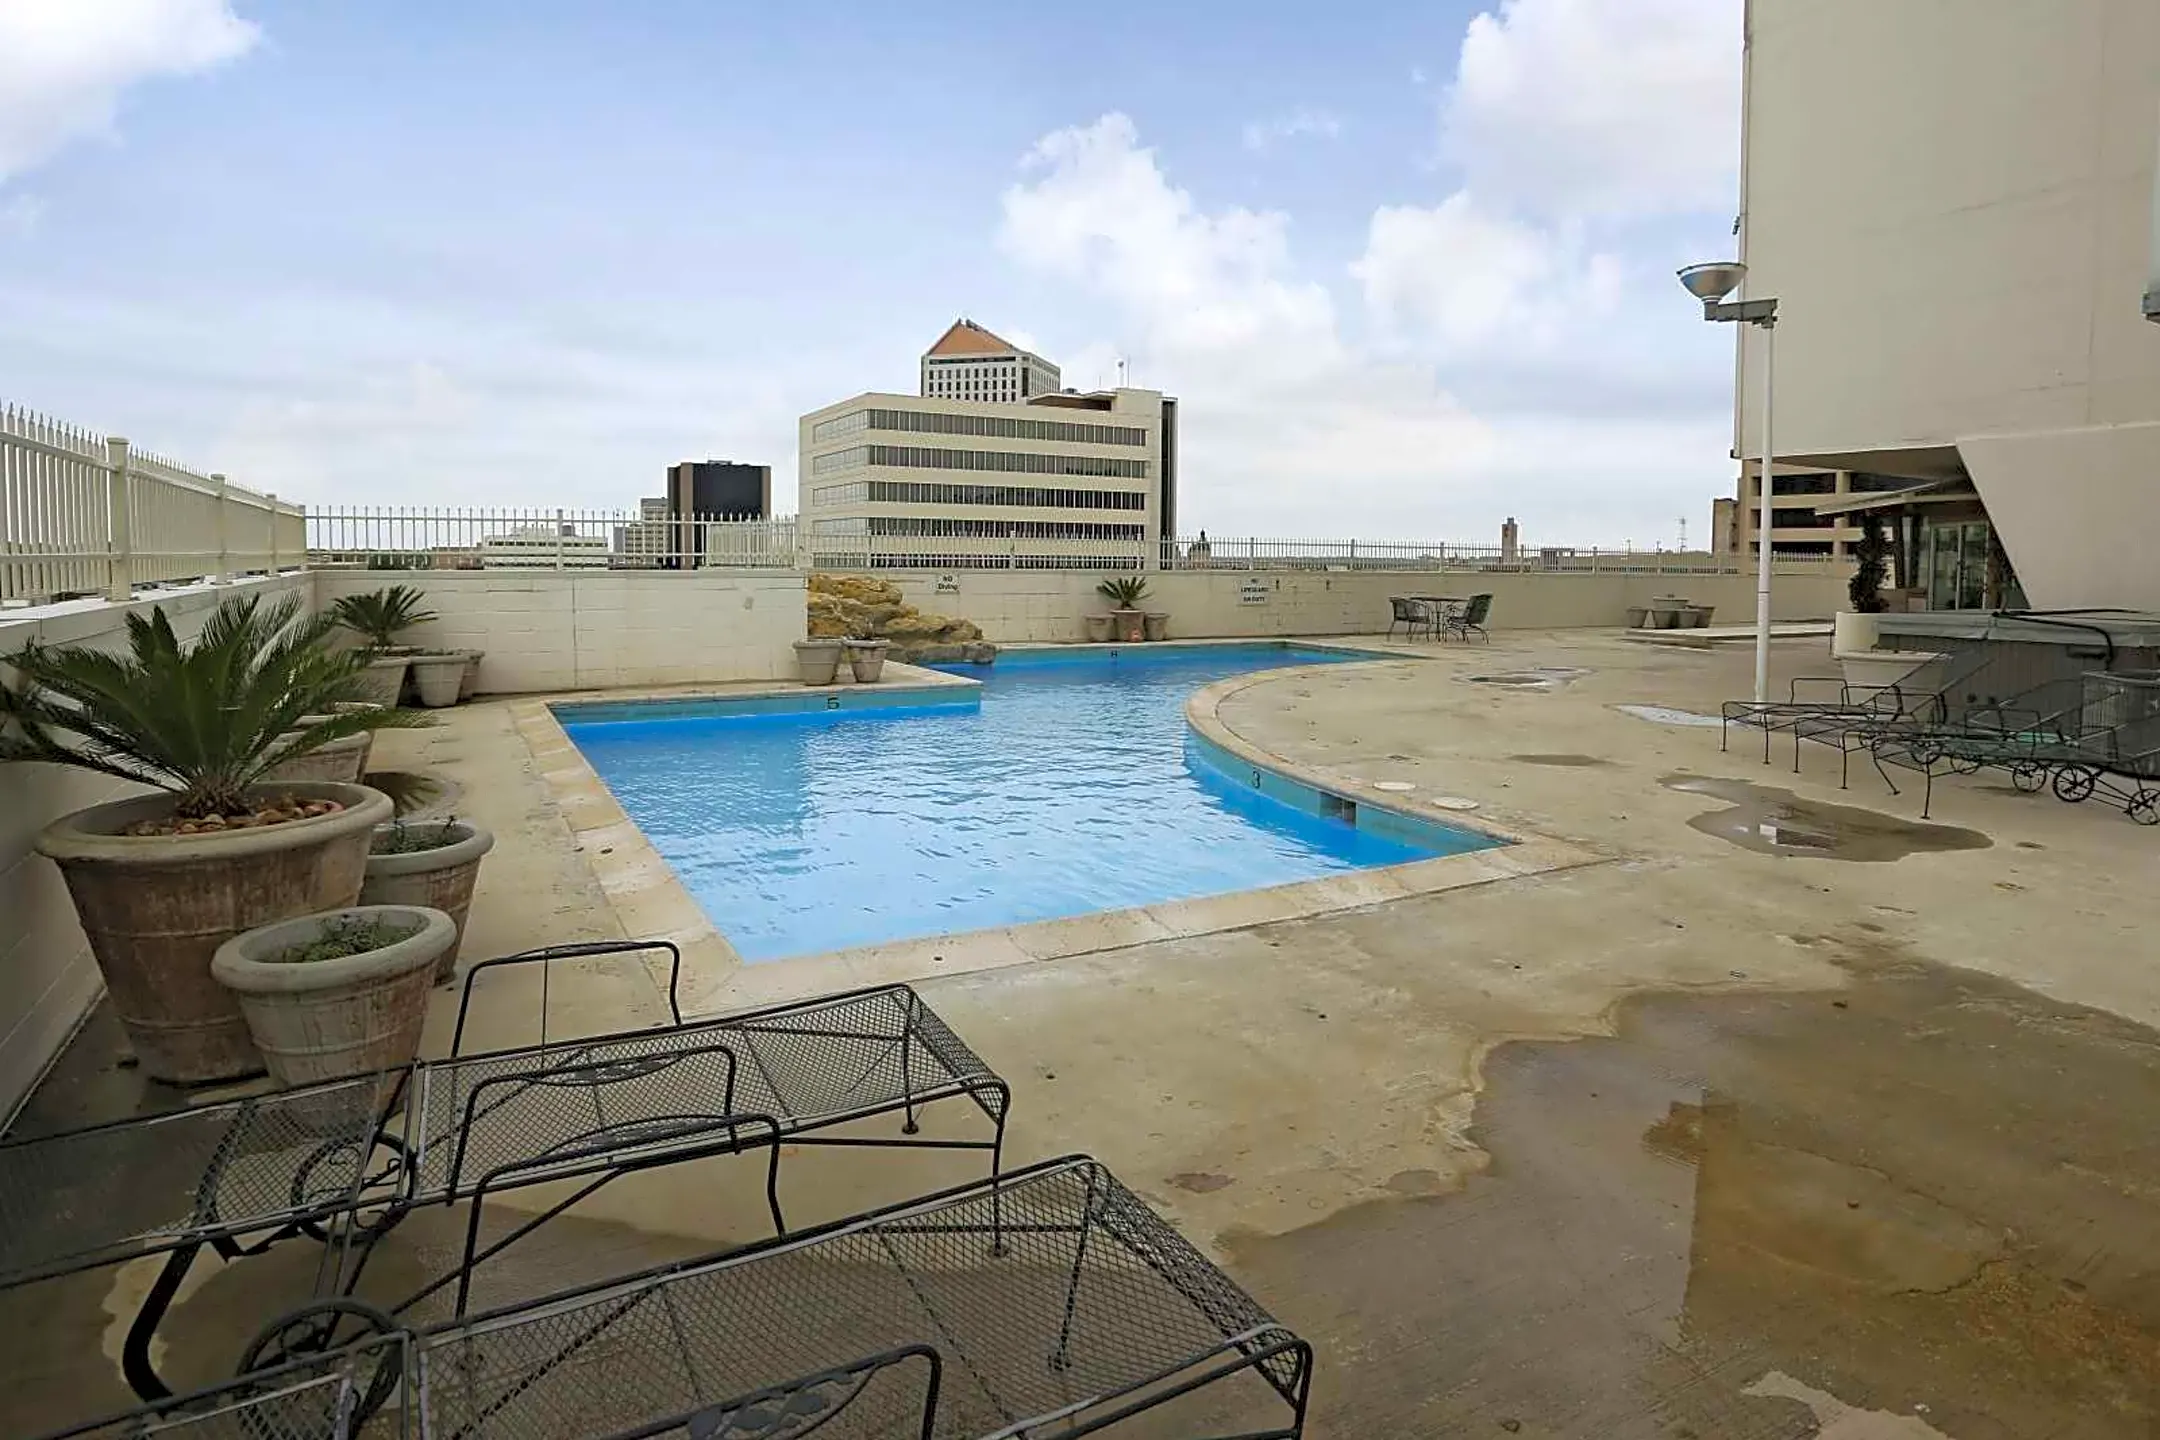 Pool - 250 Douglas Place - Wichita, KS